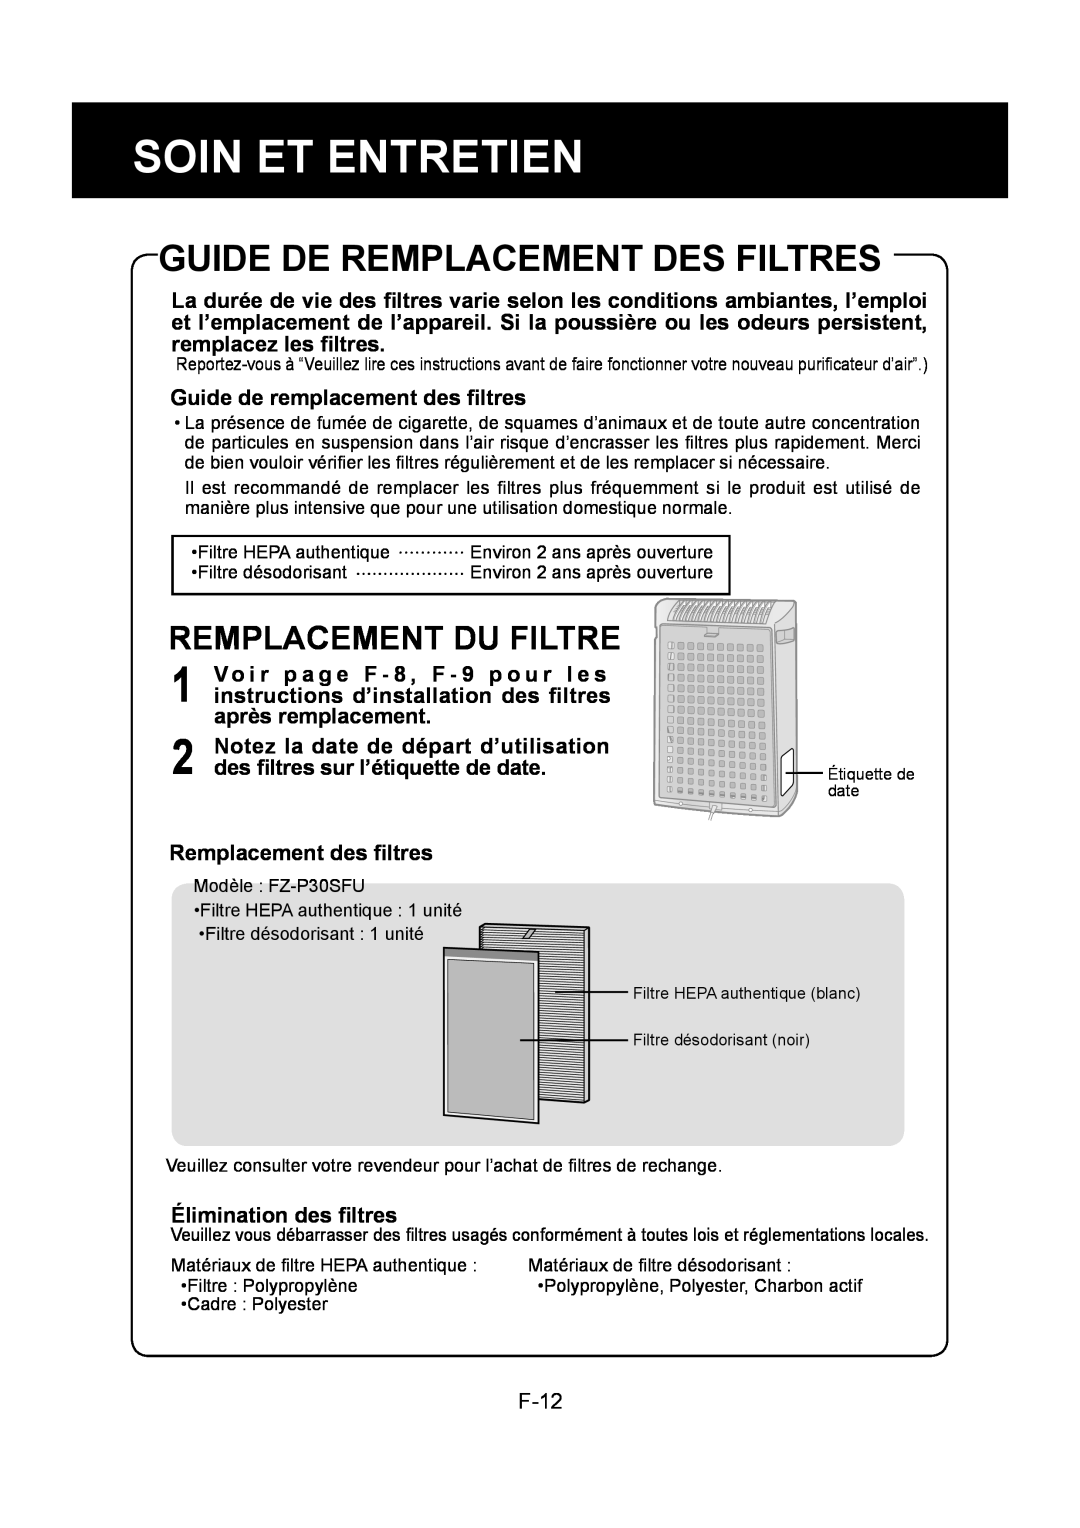 Sharp FP-P30U operation manual Guide De Remplacement Des Filtres, Remplacement Du Filtre, F-12, Soin Et Entretien 